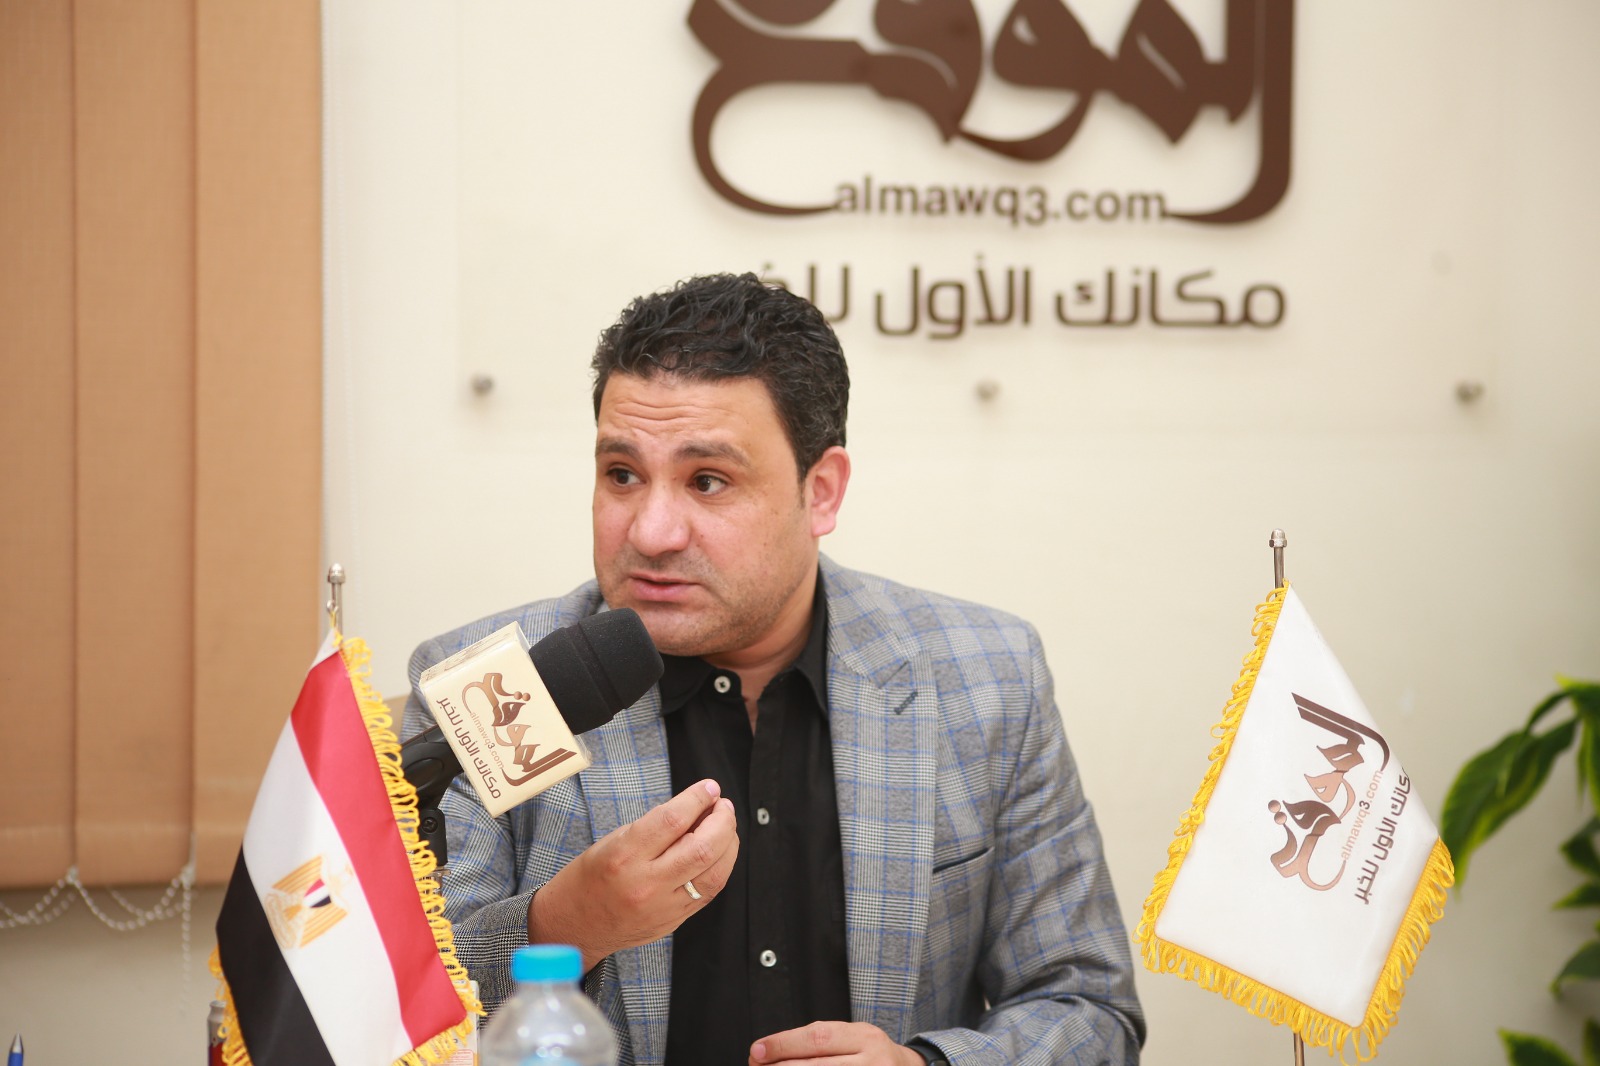 الإعلامي الرياضي كريم أبو حسين